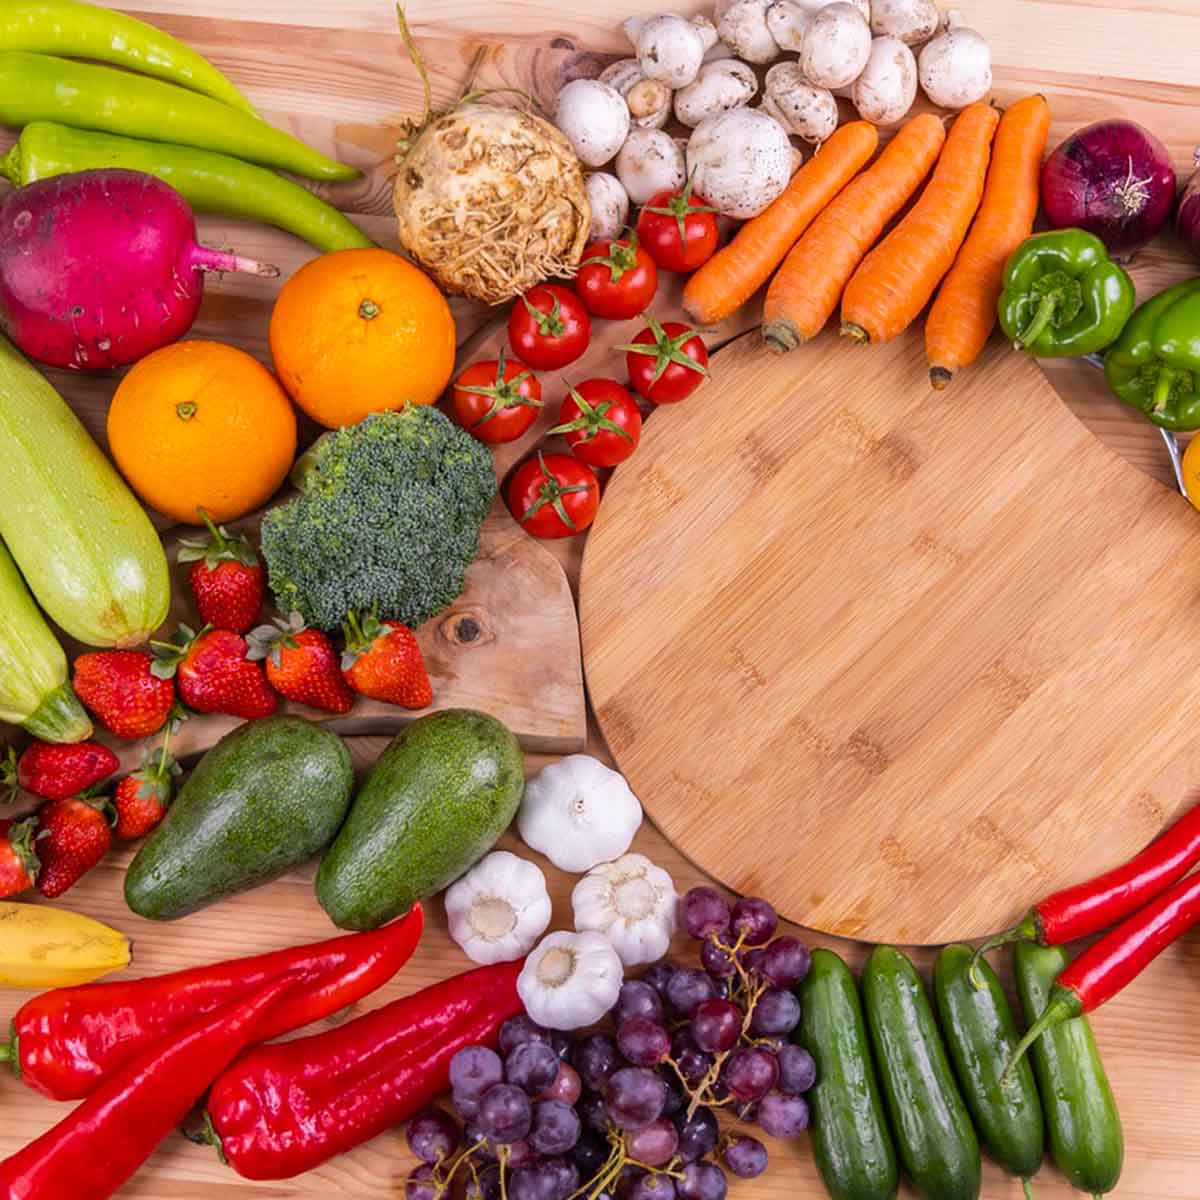 quais legumes, verduras e frutas devemos guardar na geladeira